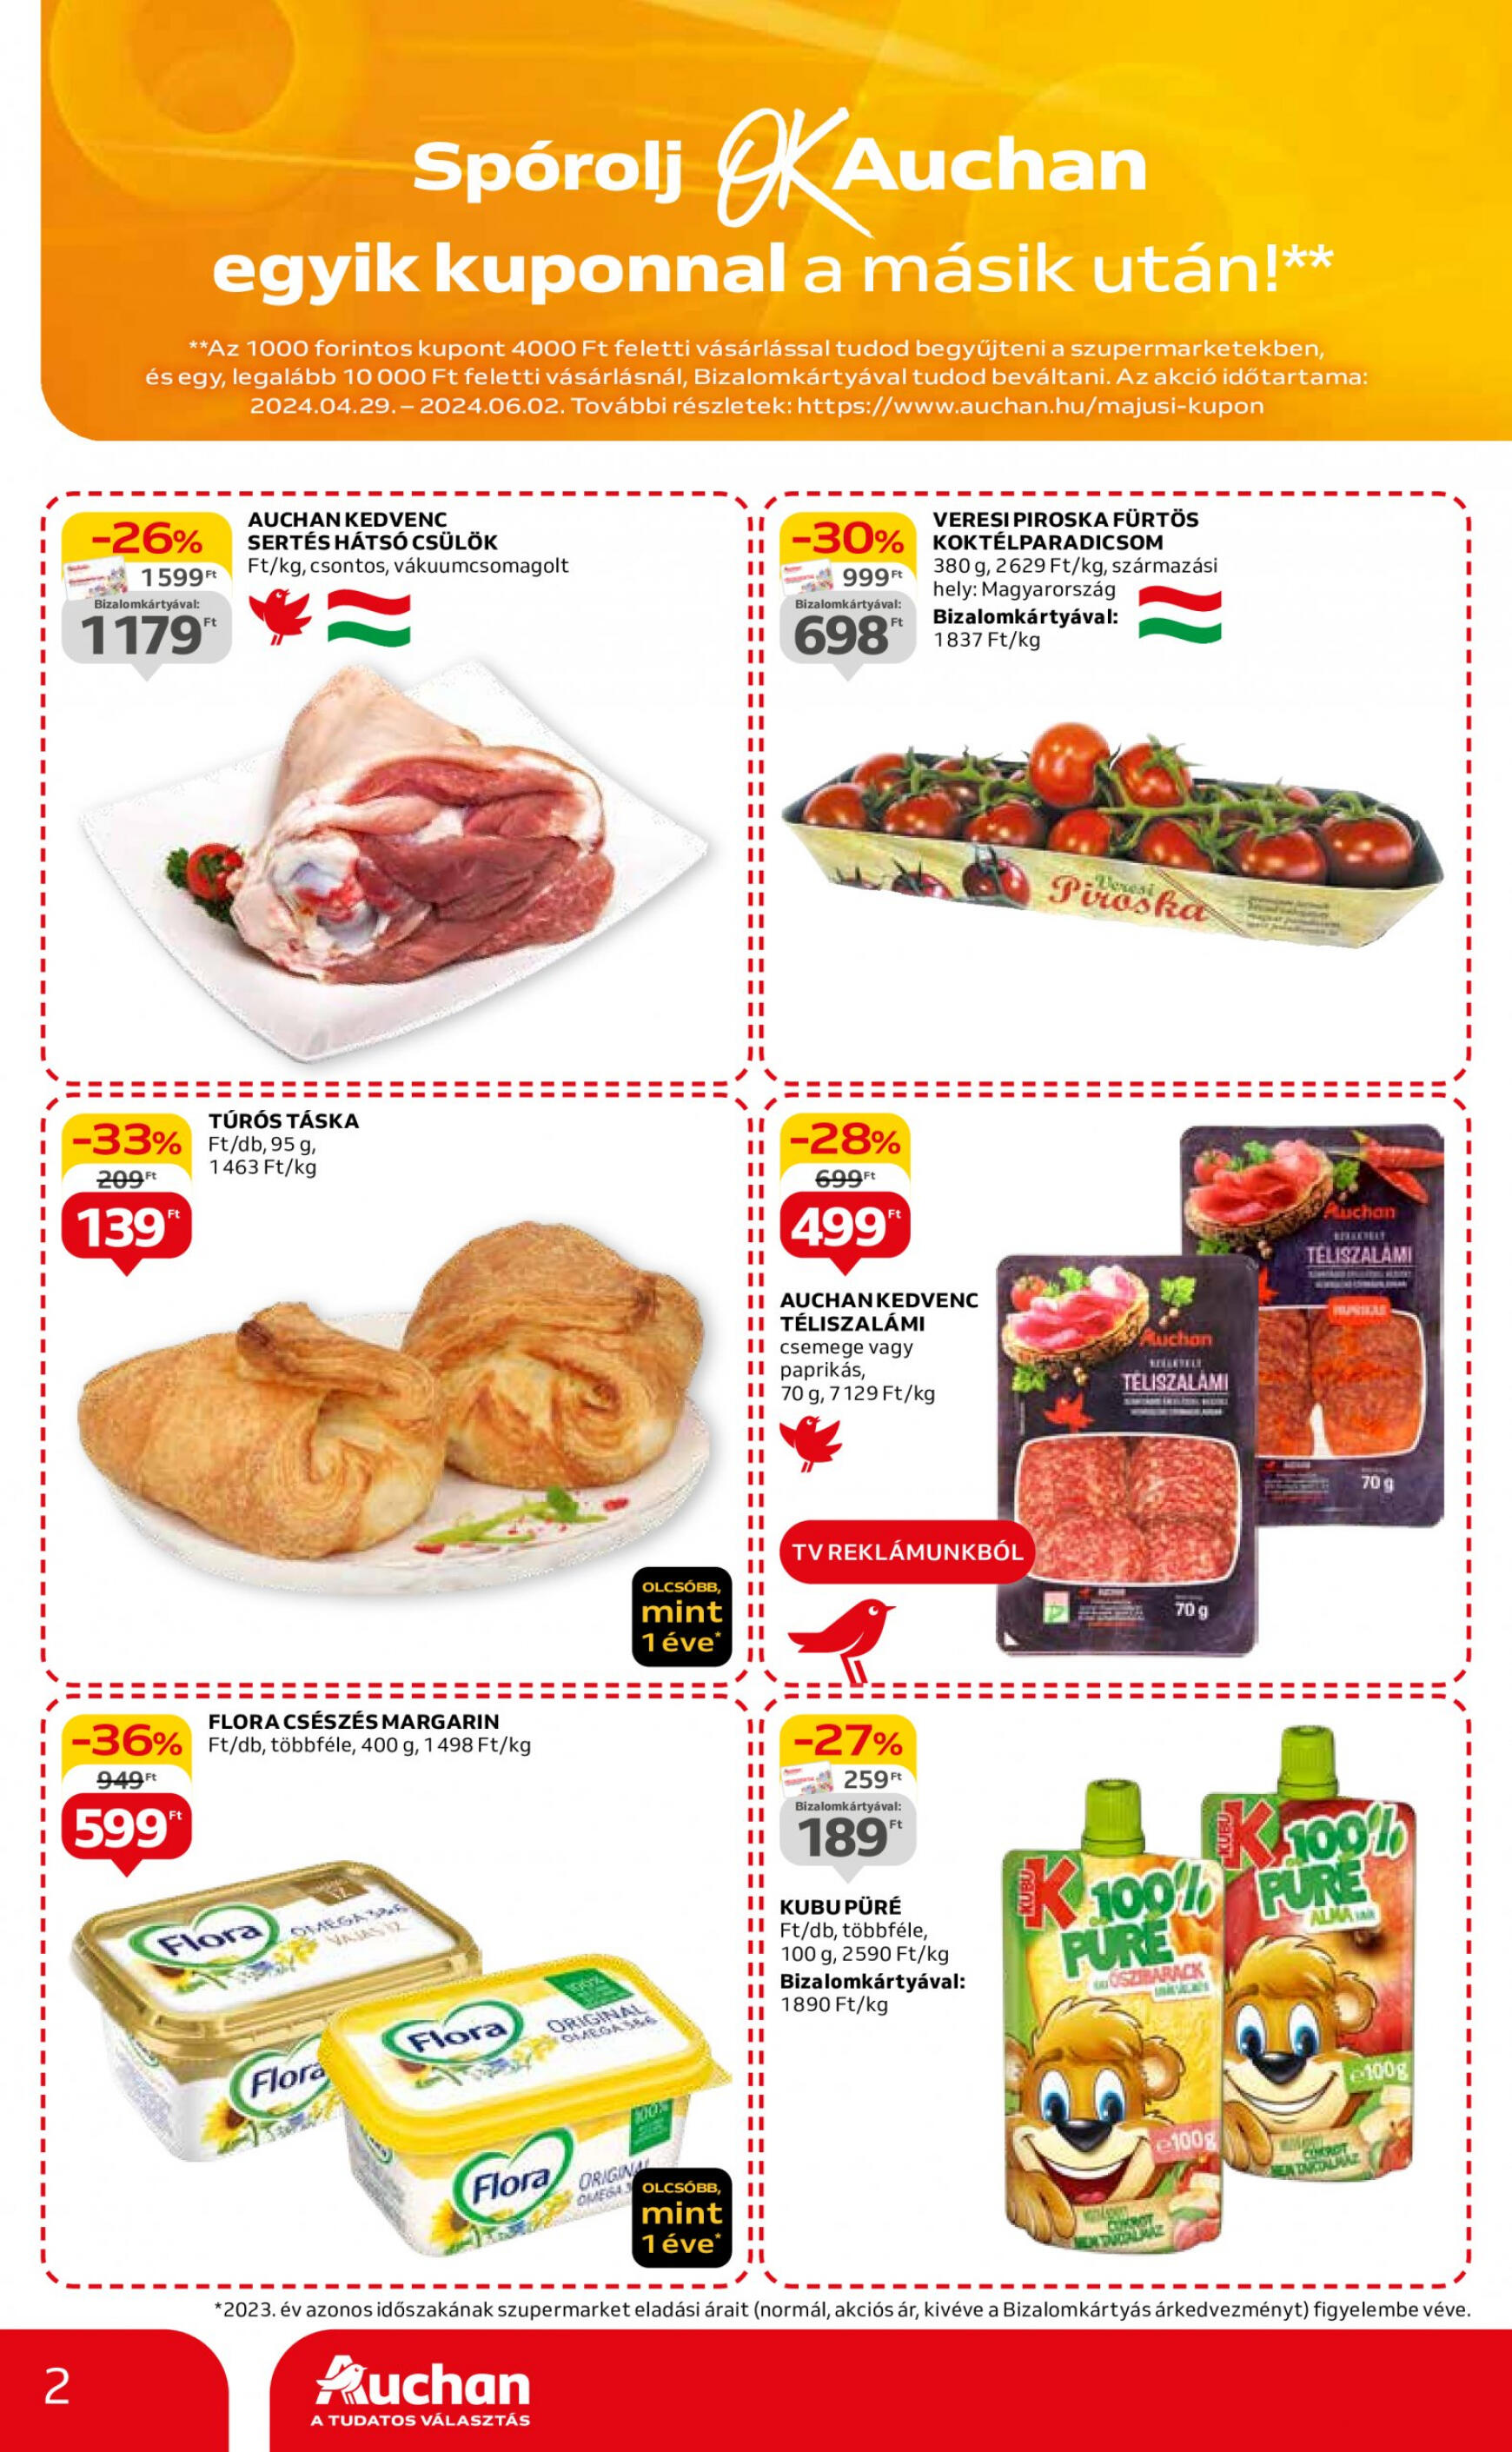 auchan - Aktuális újság Auchan szupermarket 05.16. - 05.22. - page: 2